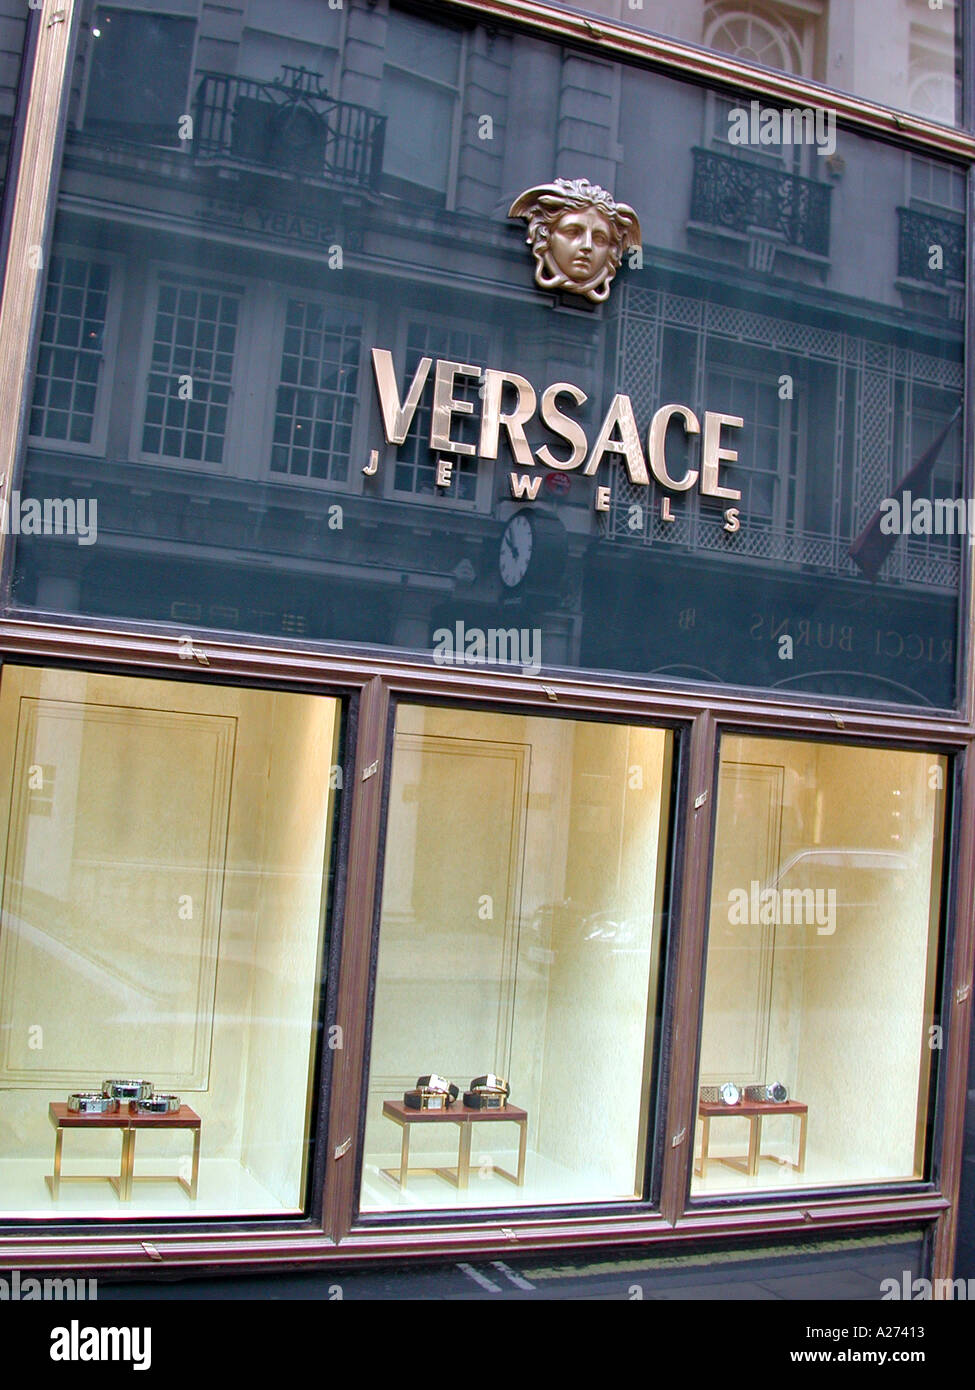 Versace Schmuck Shop und melden Sie sich mit Fenster anzuzeigen, an der New Bond Street, Westminster, London W1, England, UK. Stockfoto